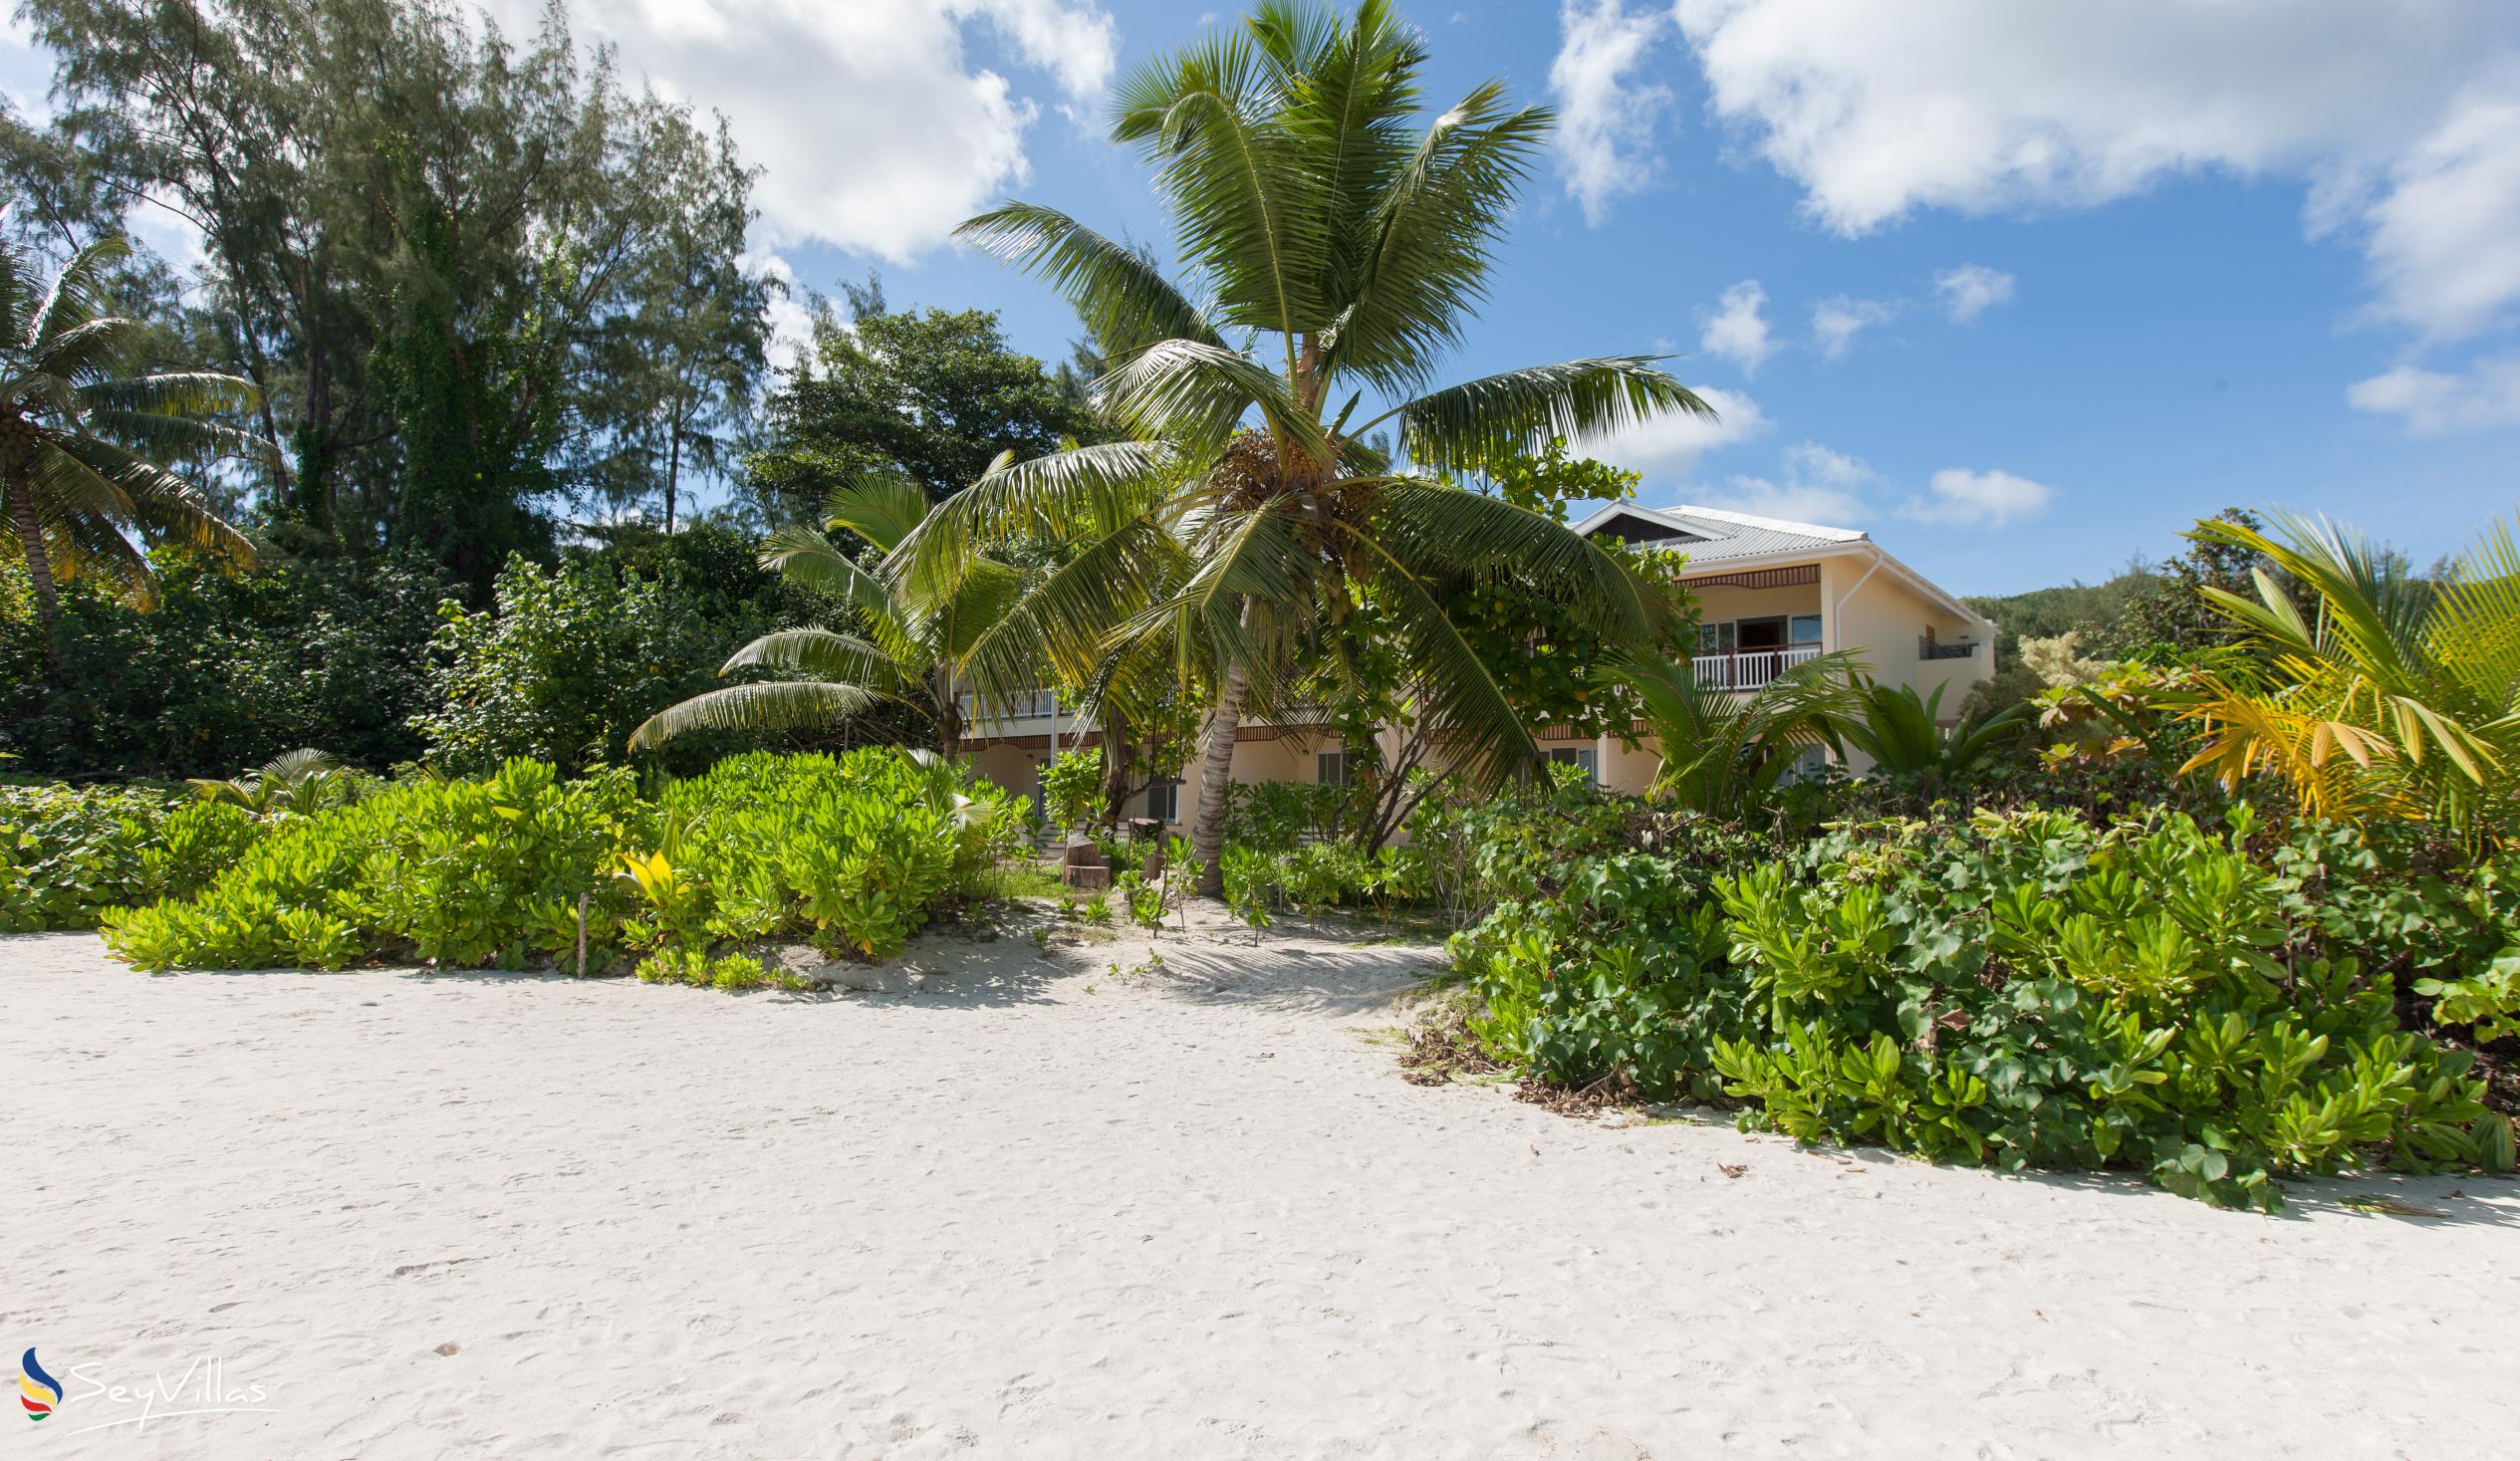 Foto 5: Acajou Beach Resort - Aussenbereich - Praslin (Seychellen)